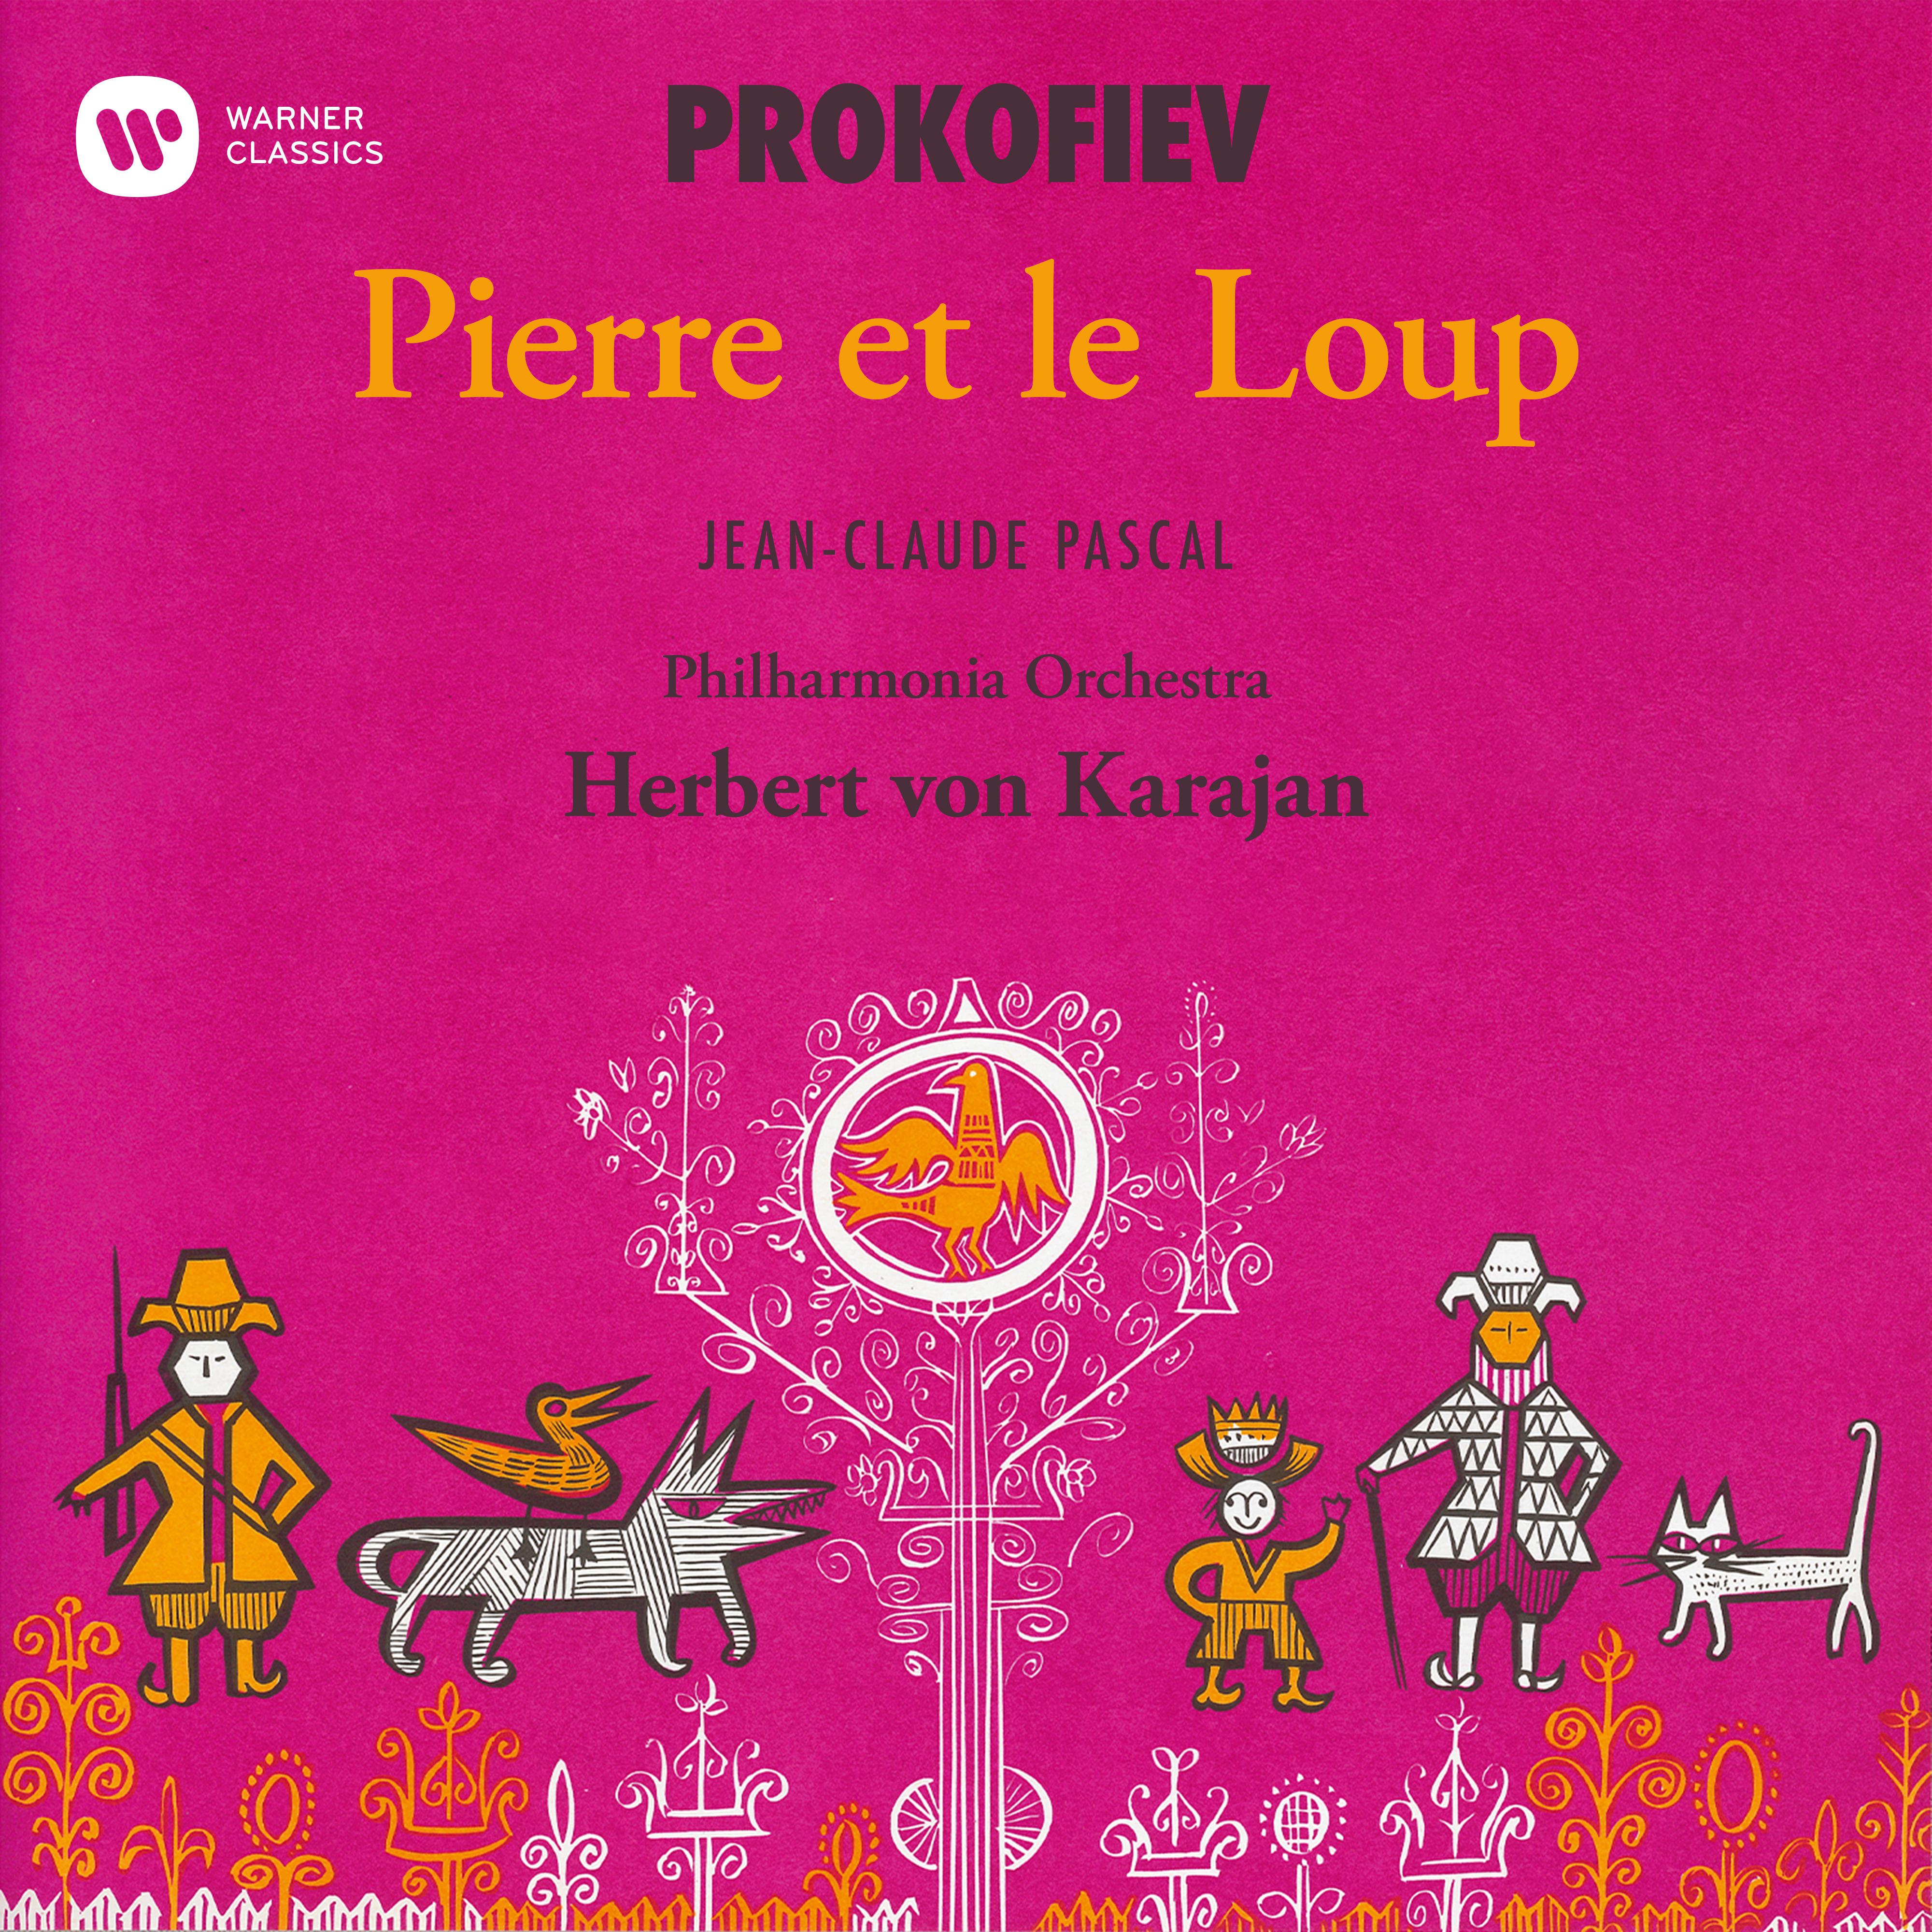 Pierre et le loup, Op. 67: Pre sentation des personnages avec leurs motifs musicaux